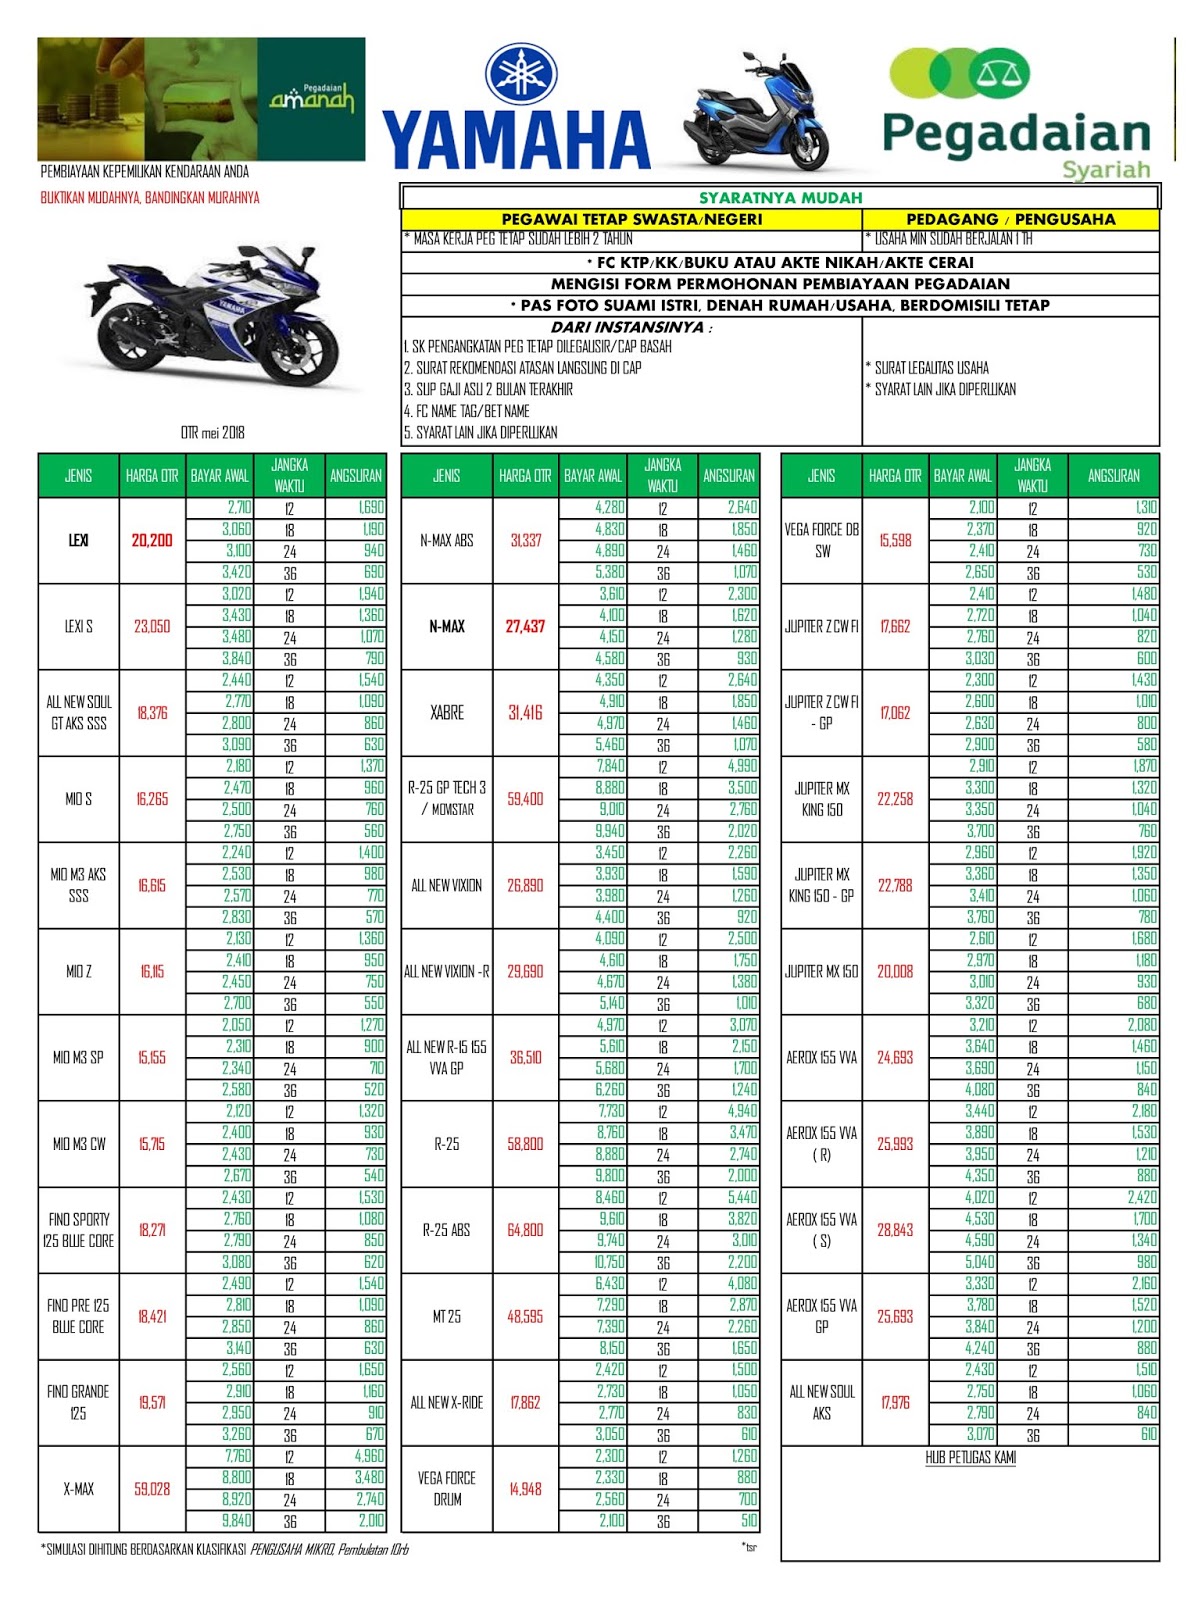 Tabel Kredit Motor Yamaha Di Pegadaian - Kaisar Soal